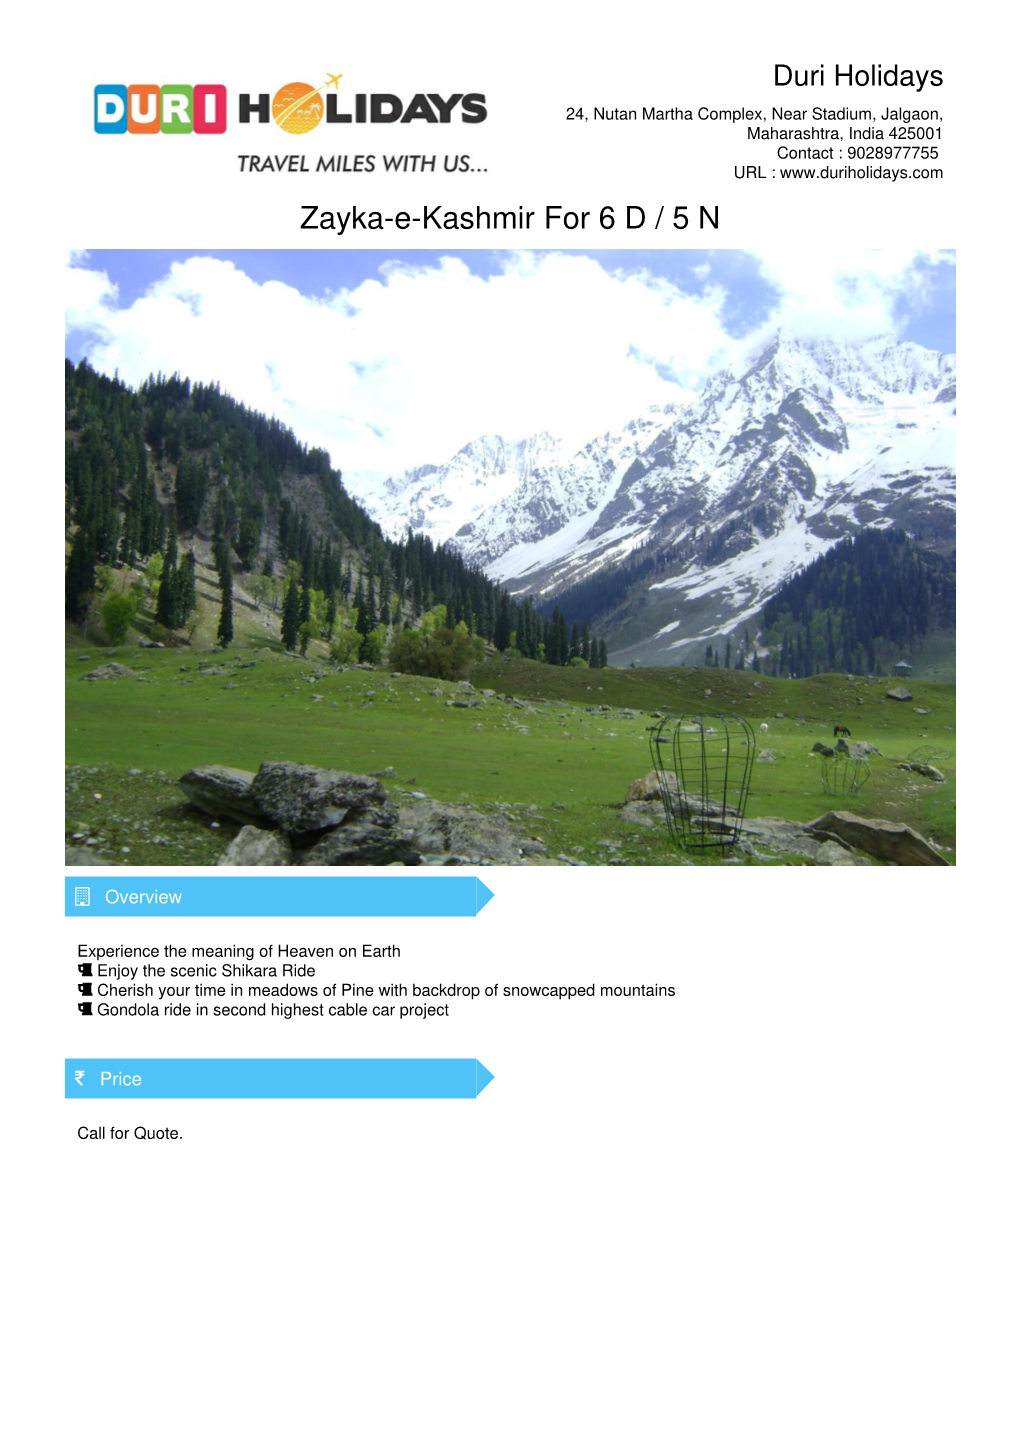 Zayka-E-Kashmir for 6 D / 5 N